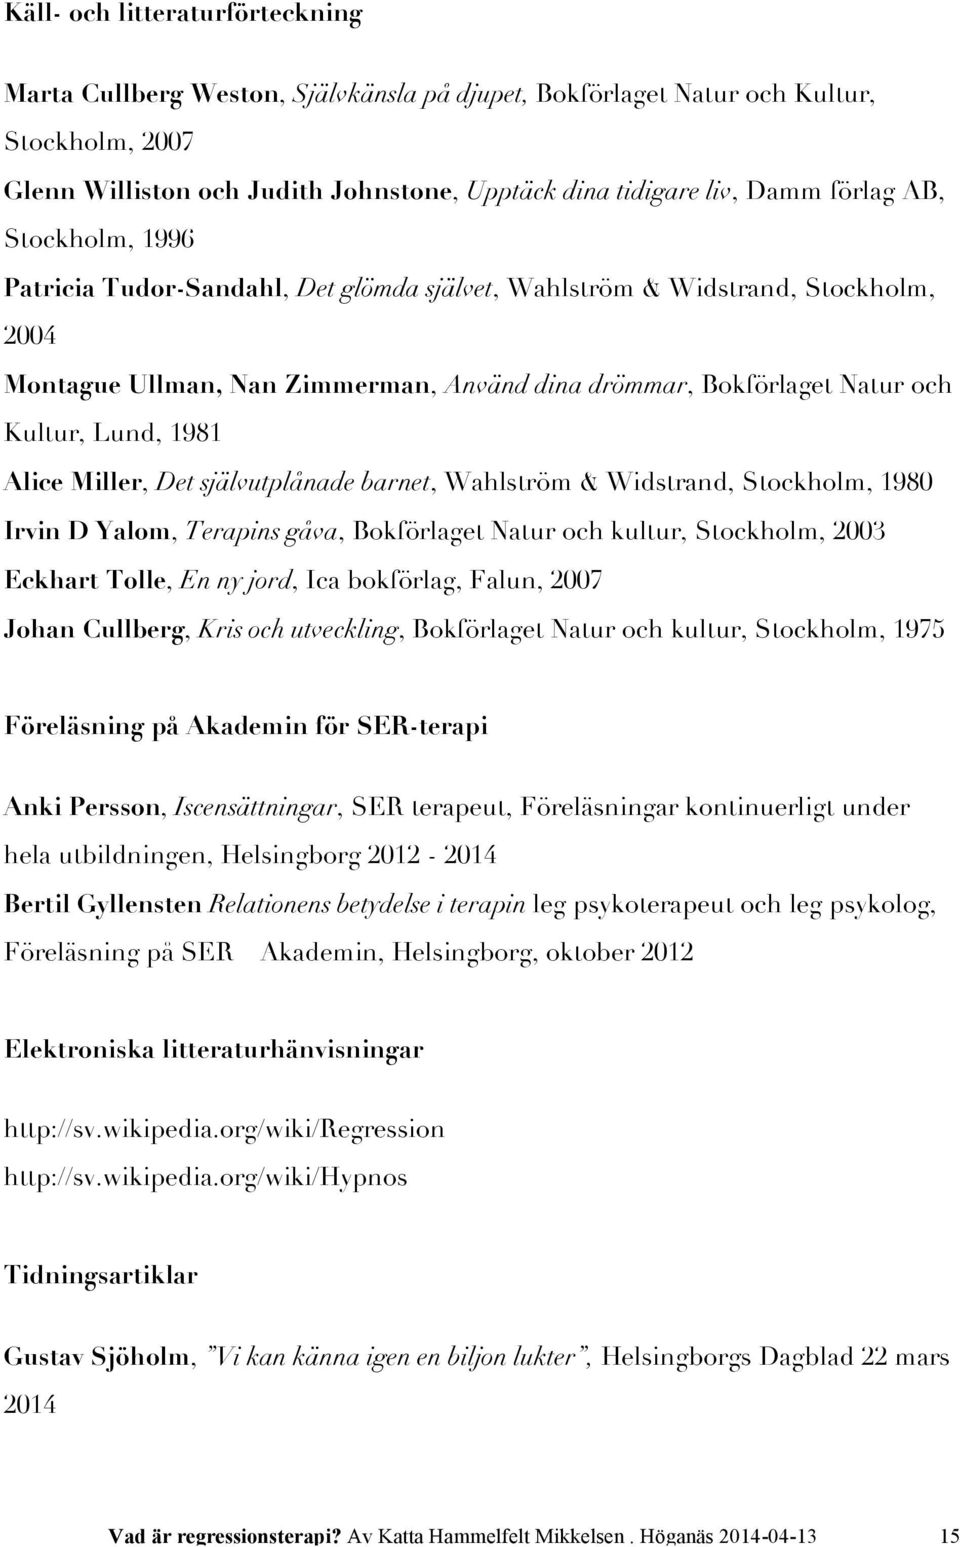 1981 Alice Miller, Det självutplånade barnet, Wahlström & Widstrand, Stockholm, 1980 Irvin D Yalom, Terapins gåva, Bokförlaget Natur och kultur, Stockholm, 2003 Eckhart Tolle, En ny jord, Ica